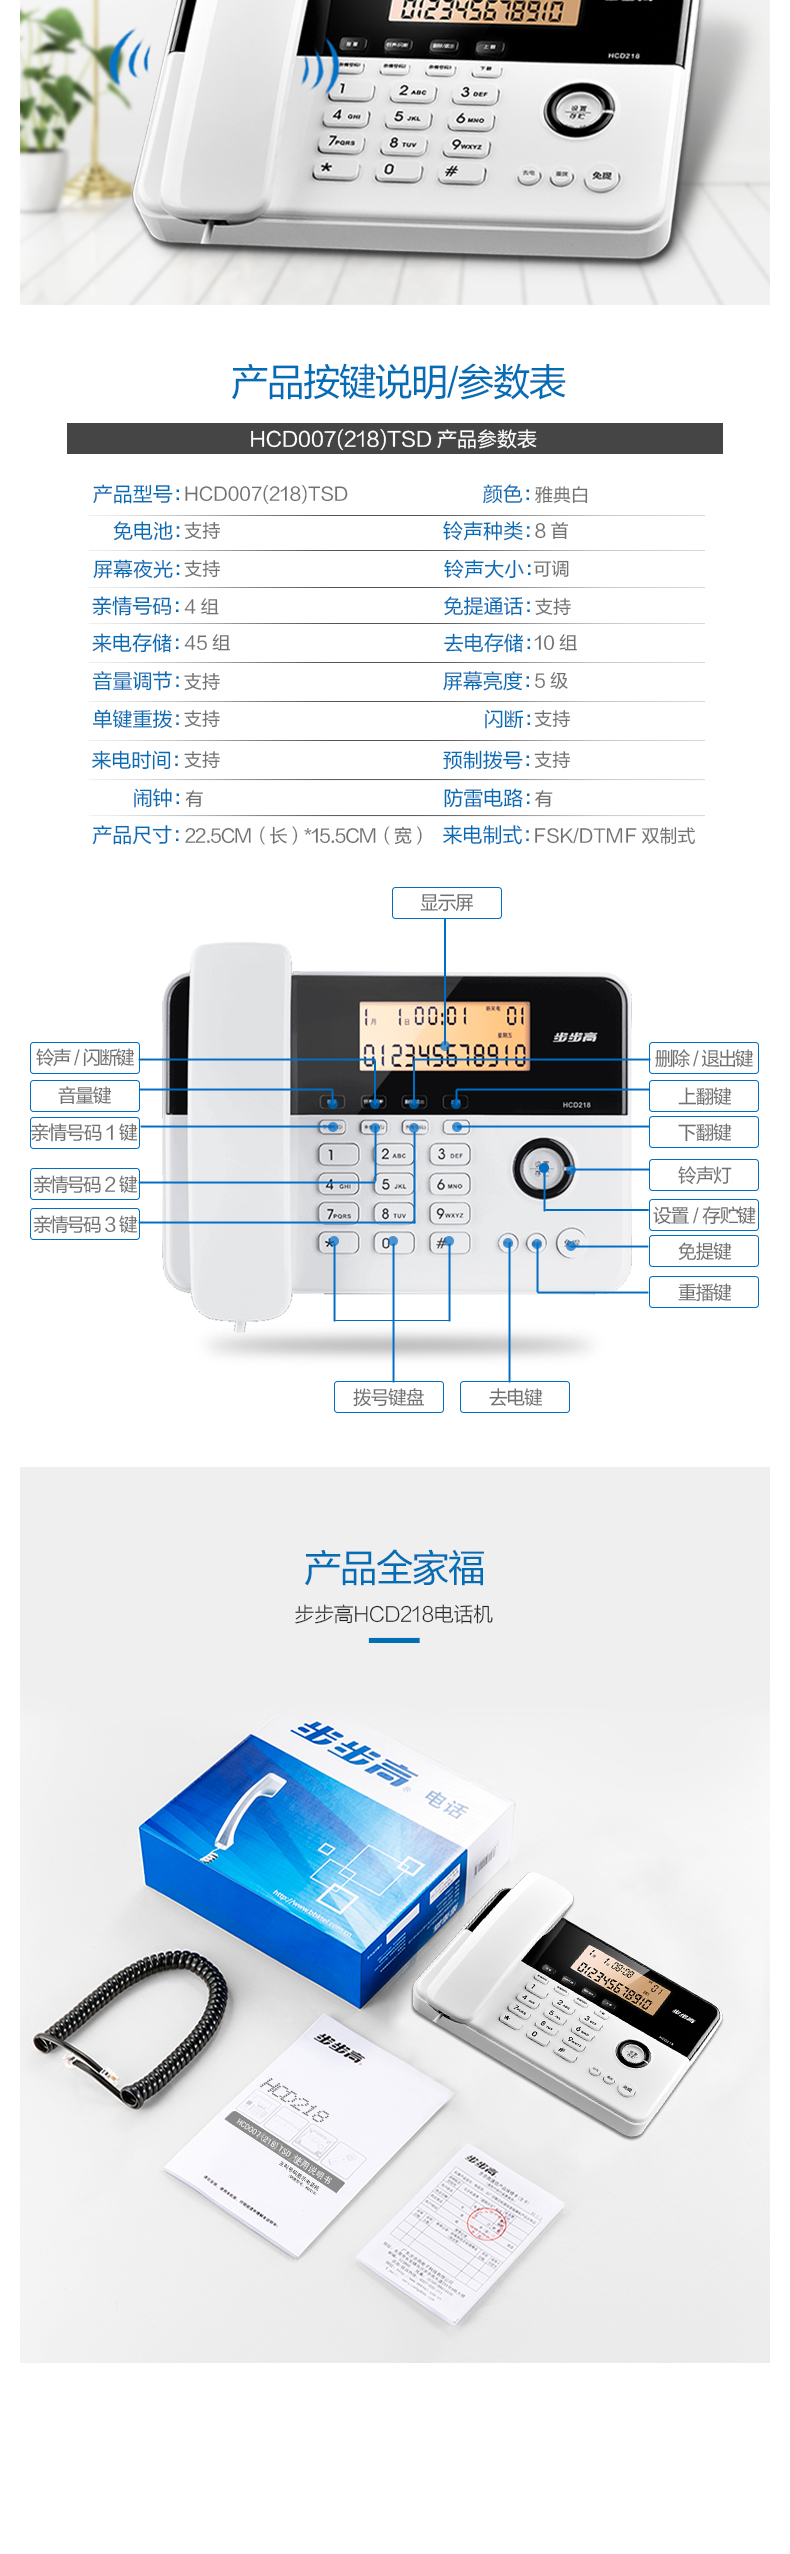 步步高 BBK 有绳电话机 HCD007(218)TSD (白色)